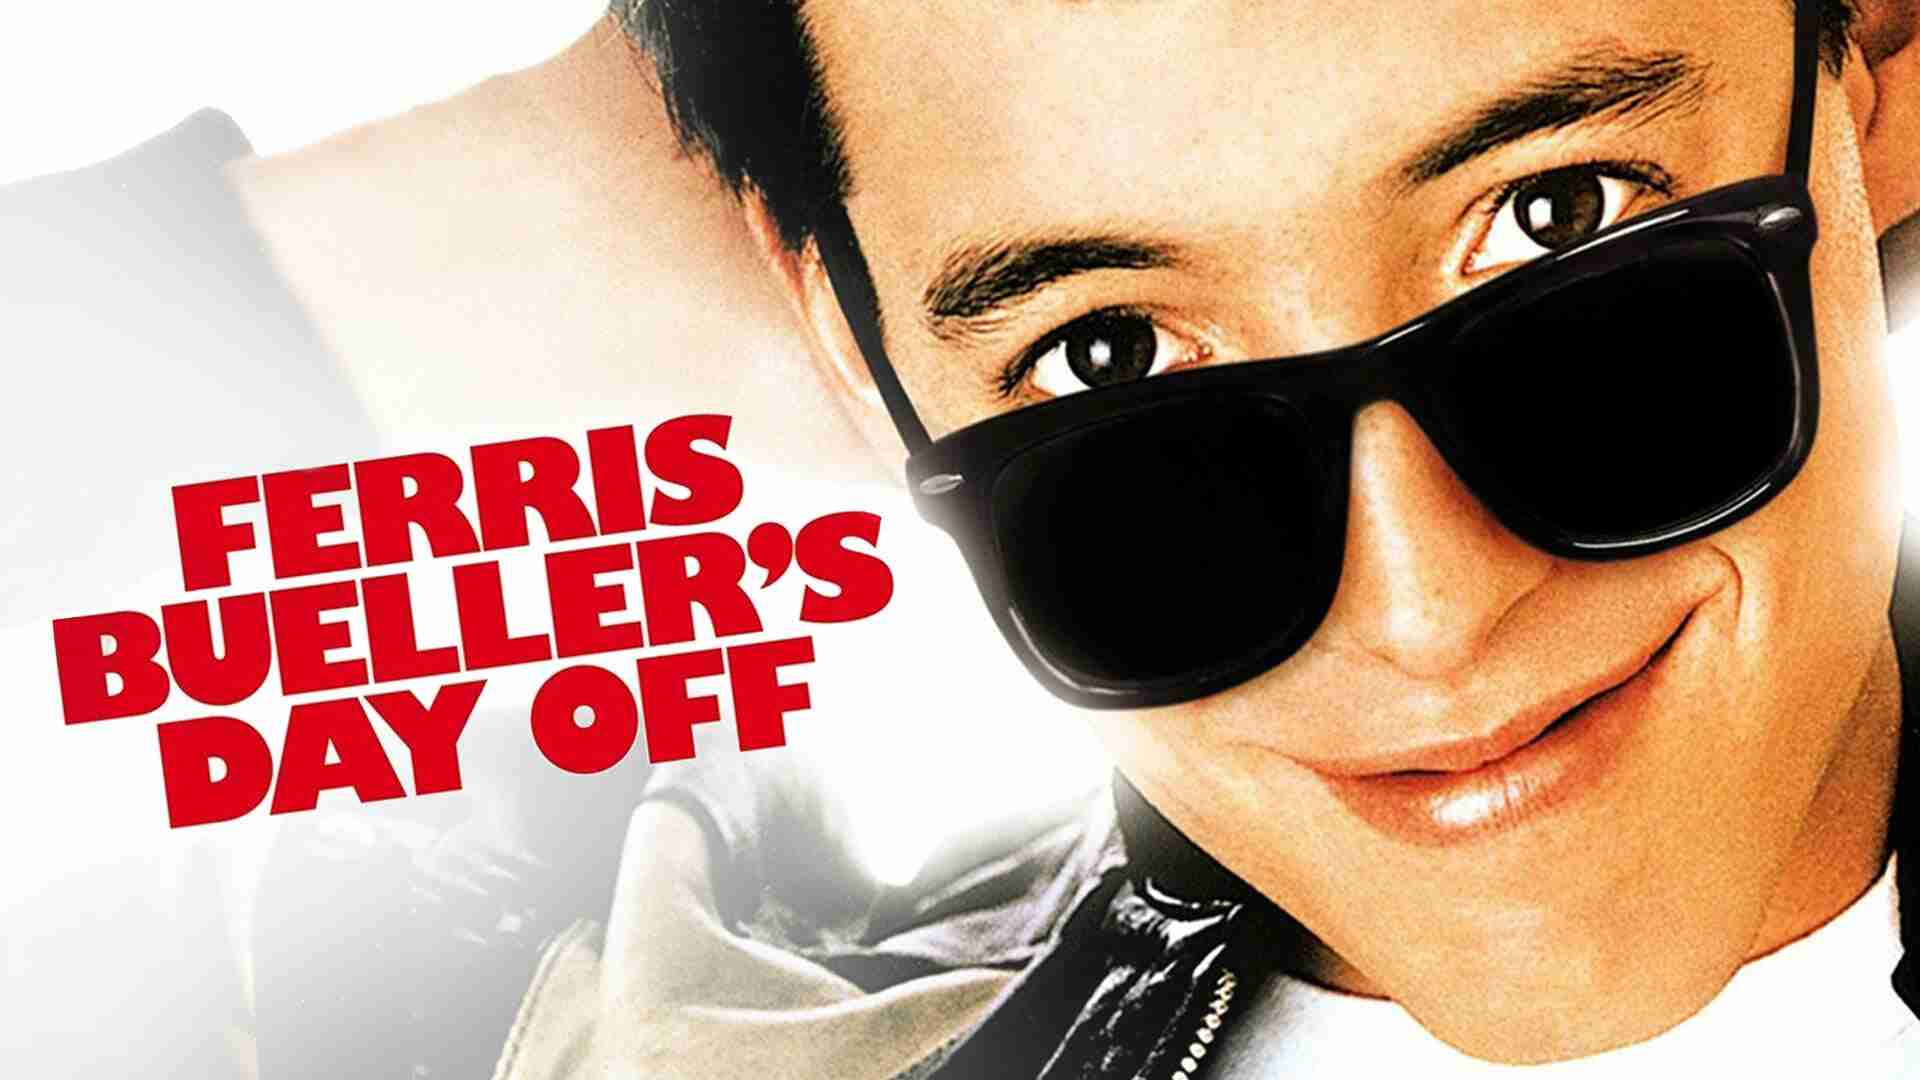  Ferris Bueller's Day Off è un film del 1986 diretto da John Hughes. La trama segue le avventure di un giovane studente di nome Ferris Bueller, che decide di prendersi un giorno di pausa dalla scuola insieme ai suoi amici Cameron e Sloane. Durante la loro giornata di libertà, i tre si divertono a fare scherzi e a vivere esperienze uniche, mentre il pres 